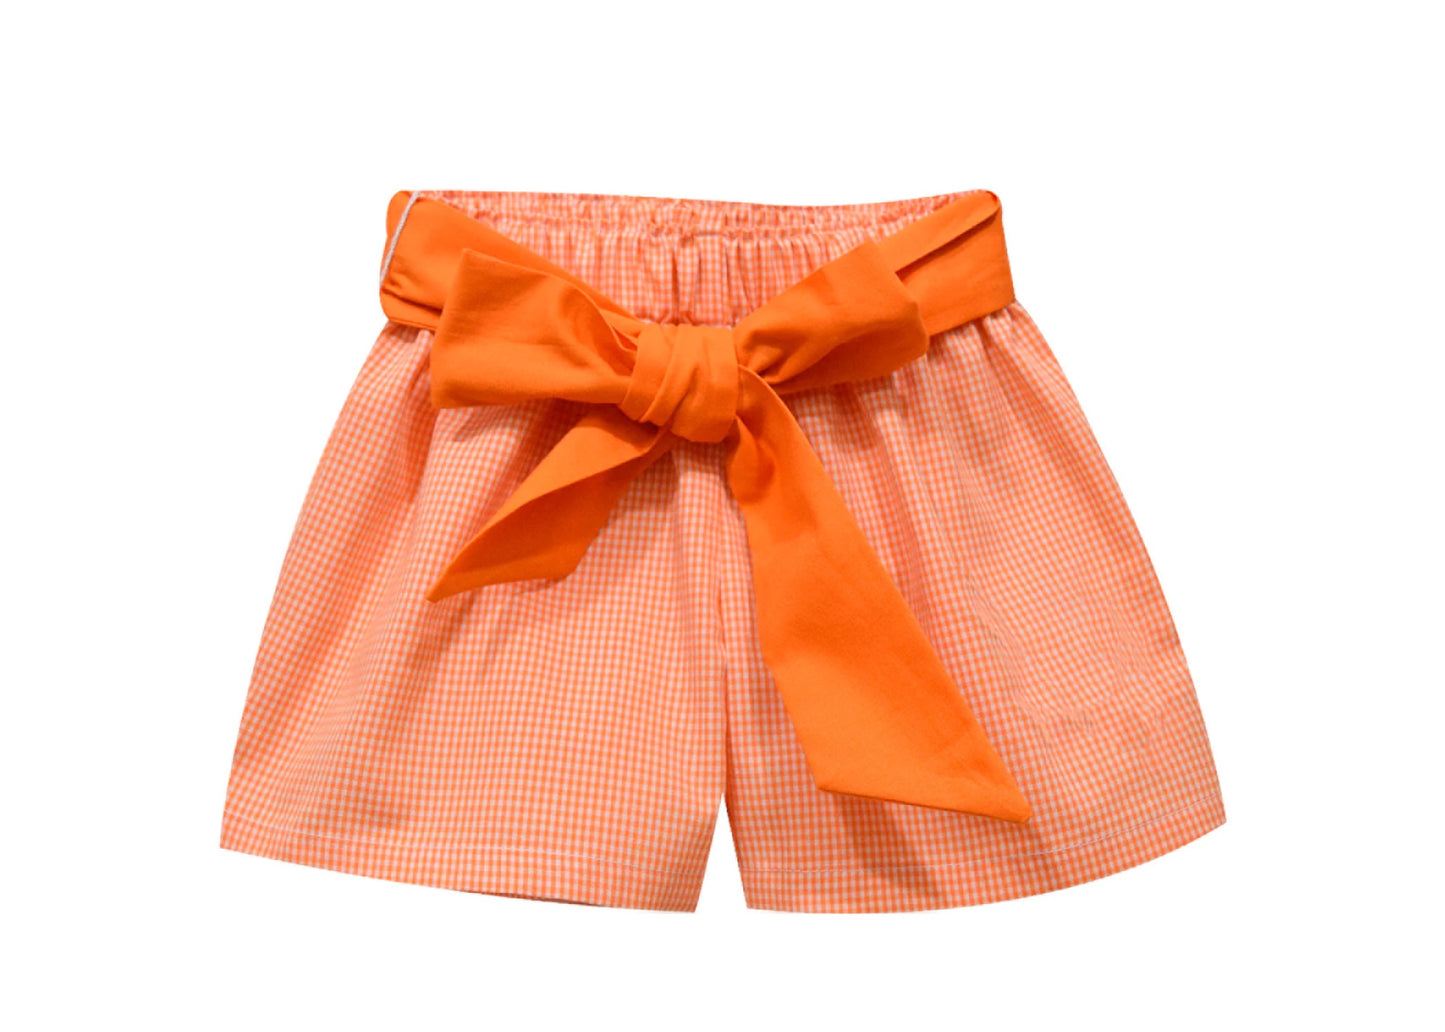 Girls Orange Gingham Shorts with Sash